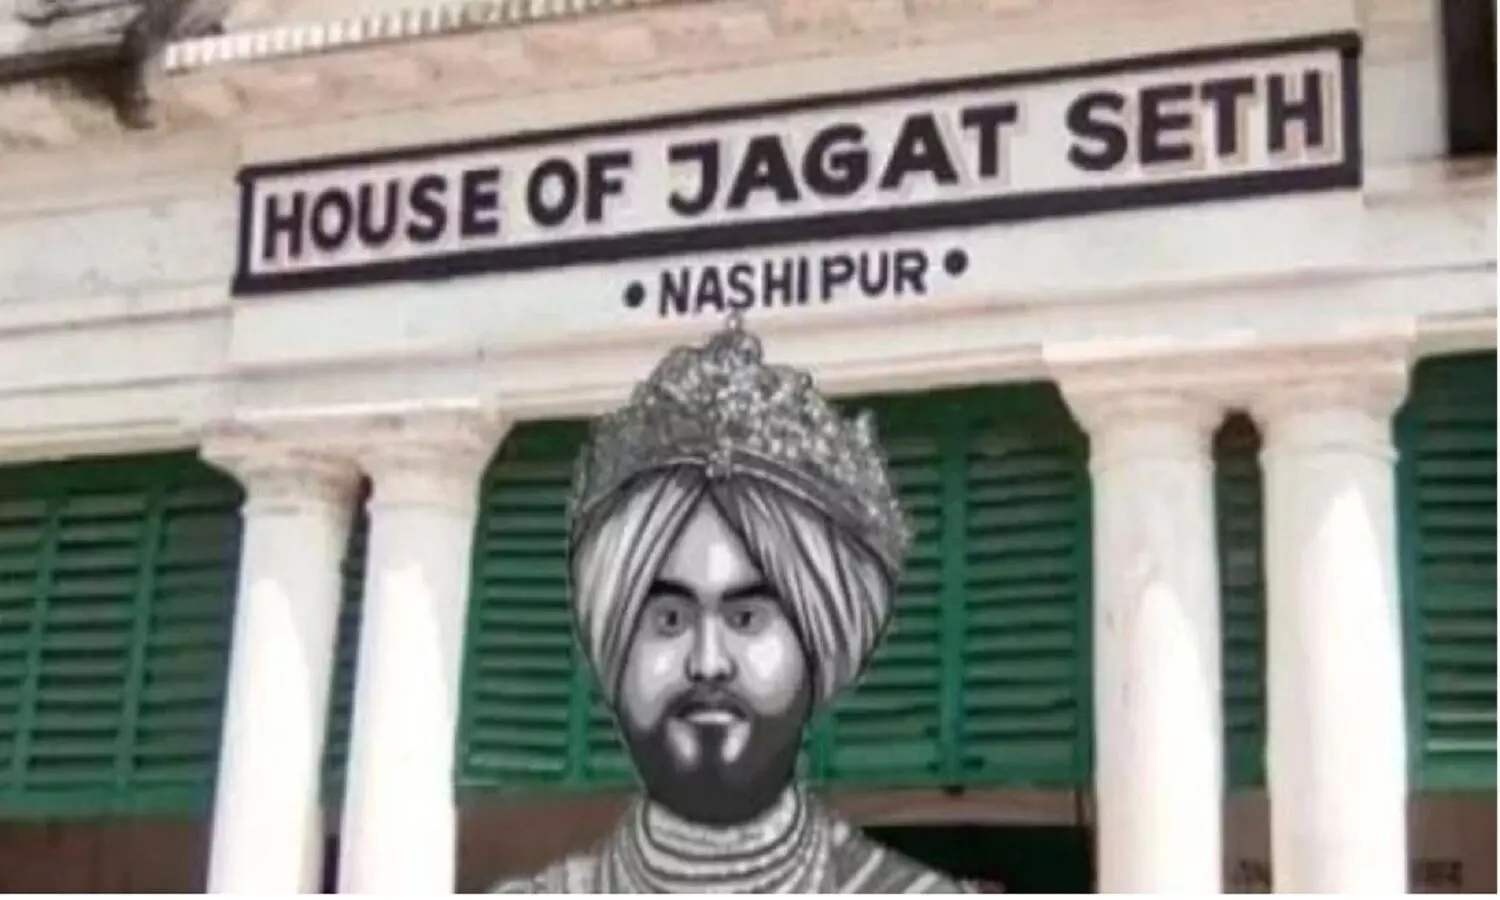 Story of Jagat Seth: बंगाल के सबसे अमीर व्यवसाई जगत सेठ की कहानी, जो अंग्रेजों को भी कर्ज देते थे